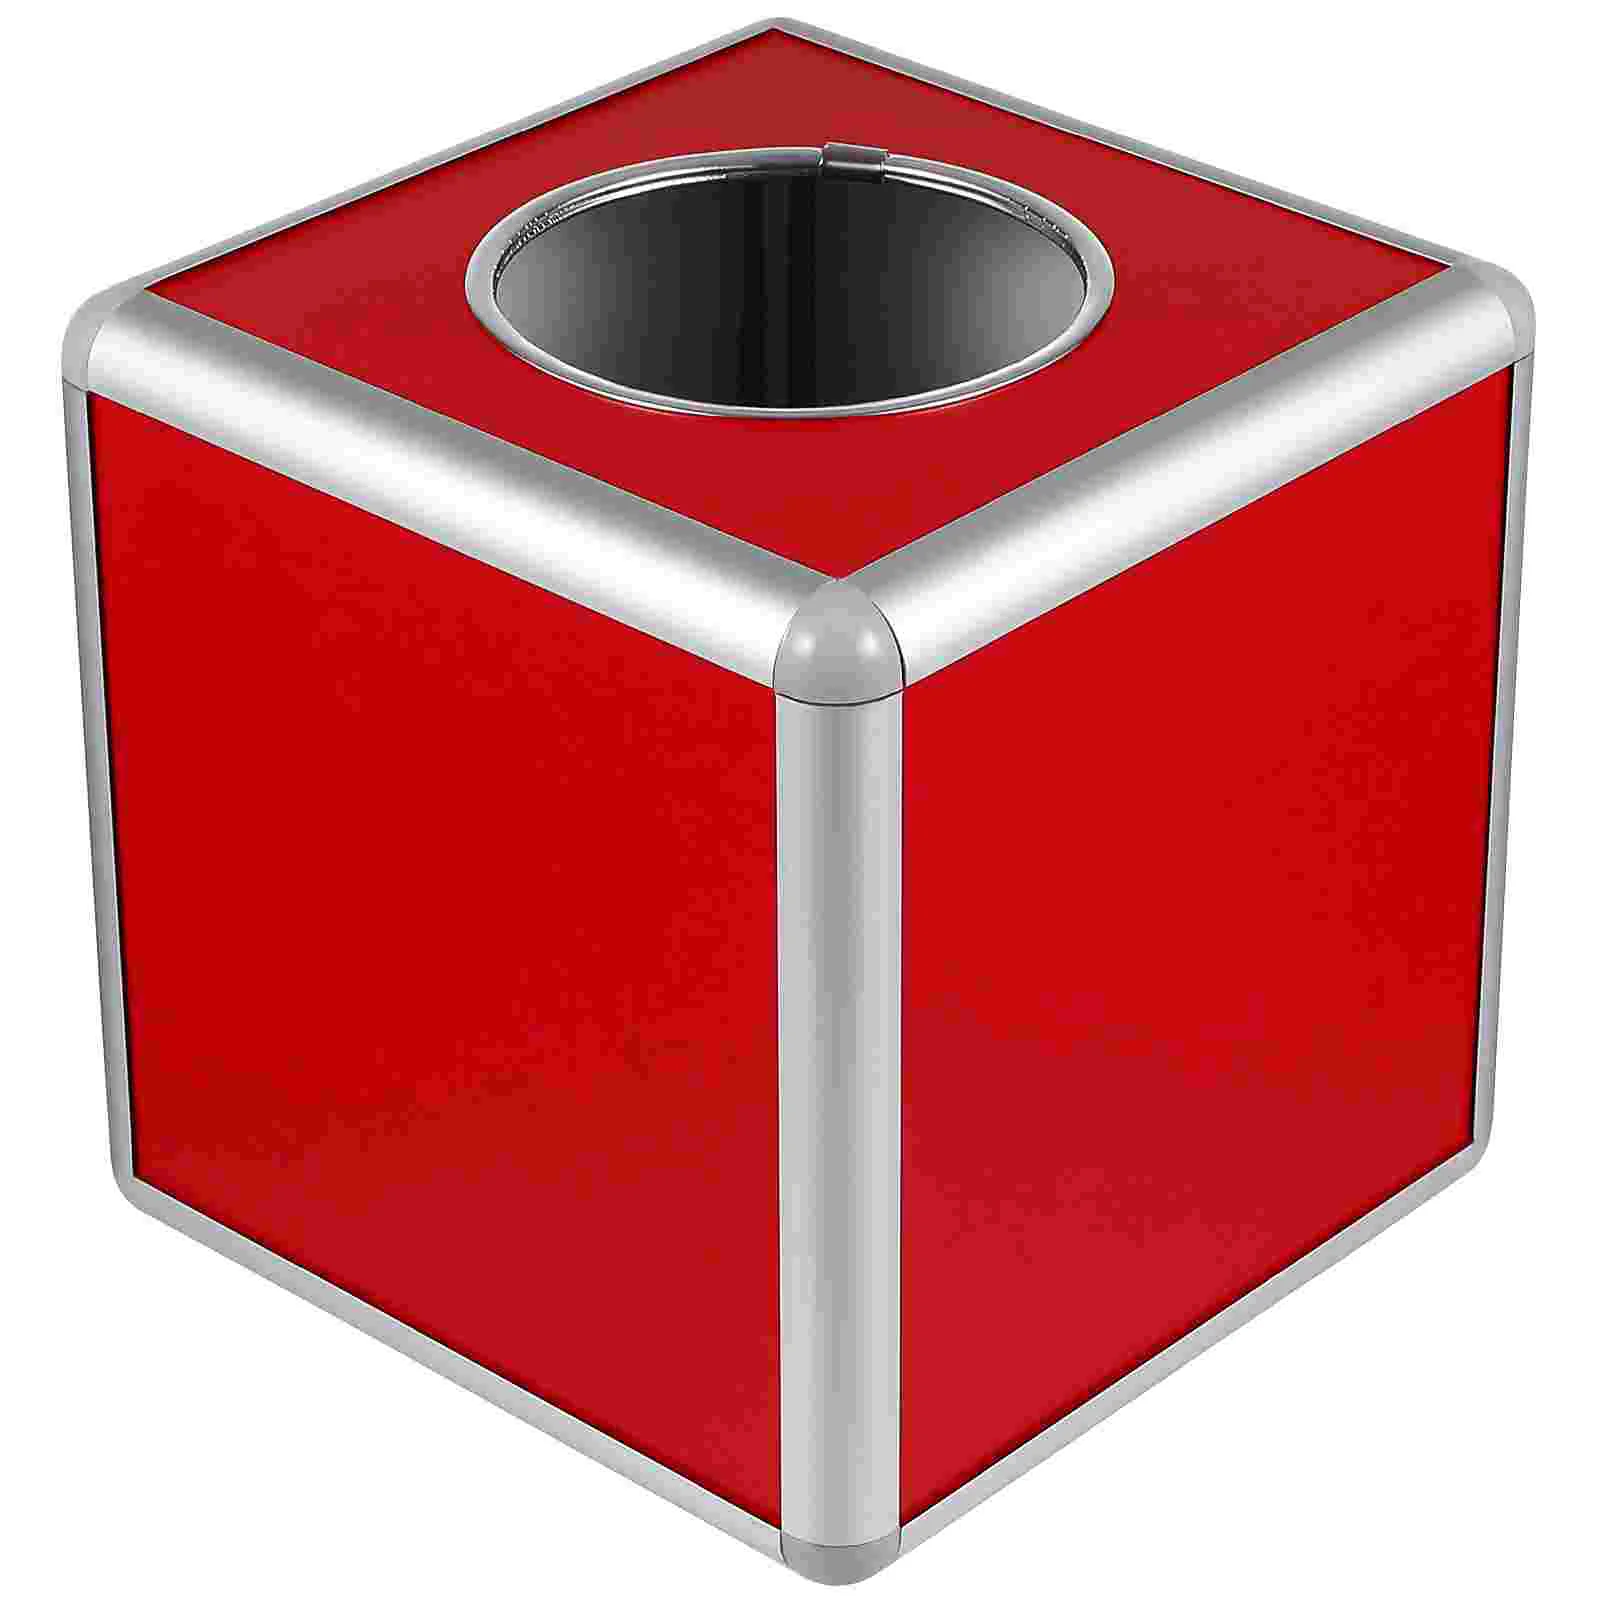 

Лотерея коробка из рафии, многофункциональная квадратная коробка для хранения билетов, карт, бонусов, коробка для рисования для деловых встреч